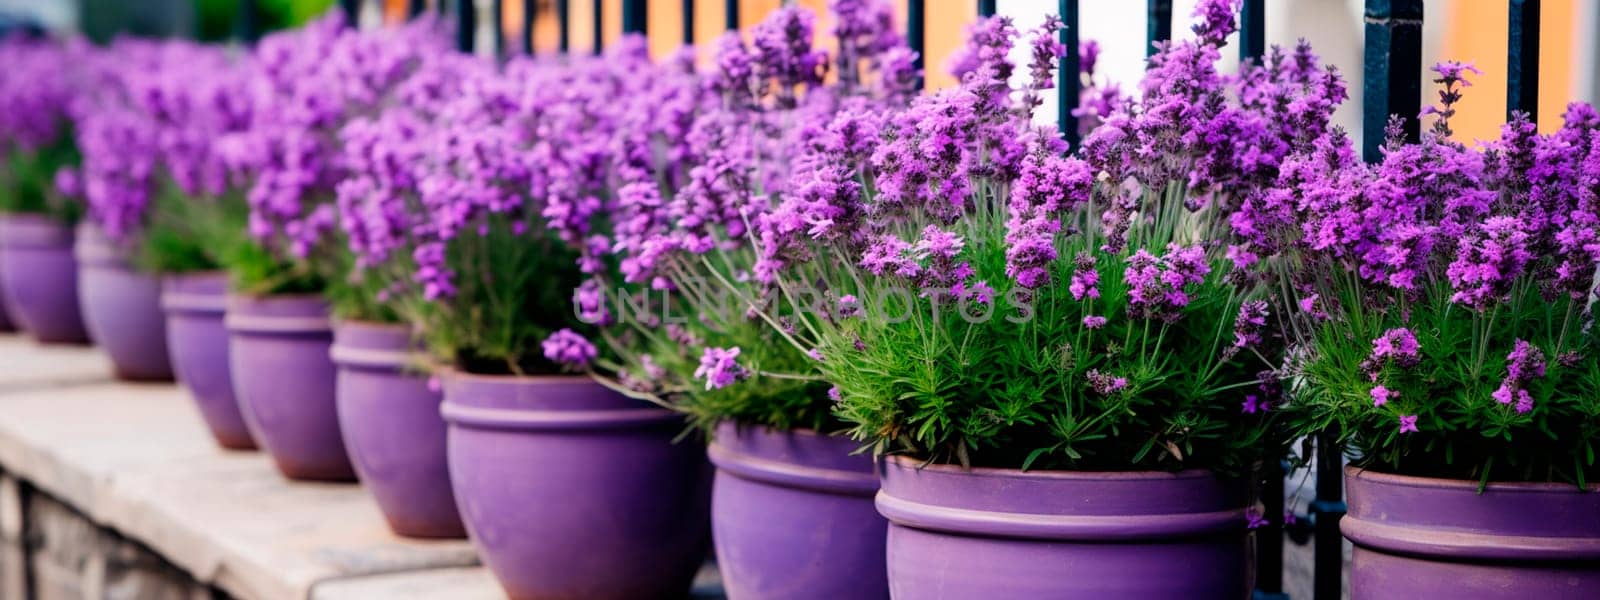 Lavender flowers in flowerpots in the yard. Generative AI, by yanadjana